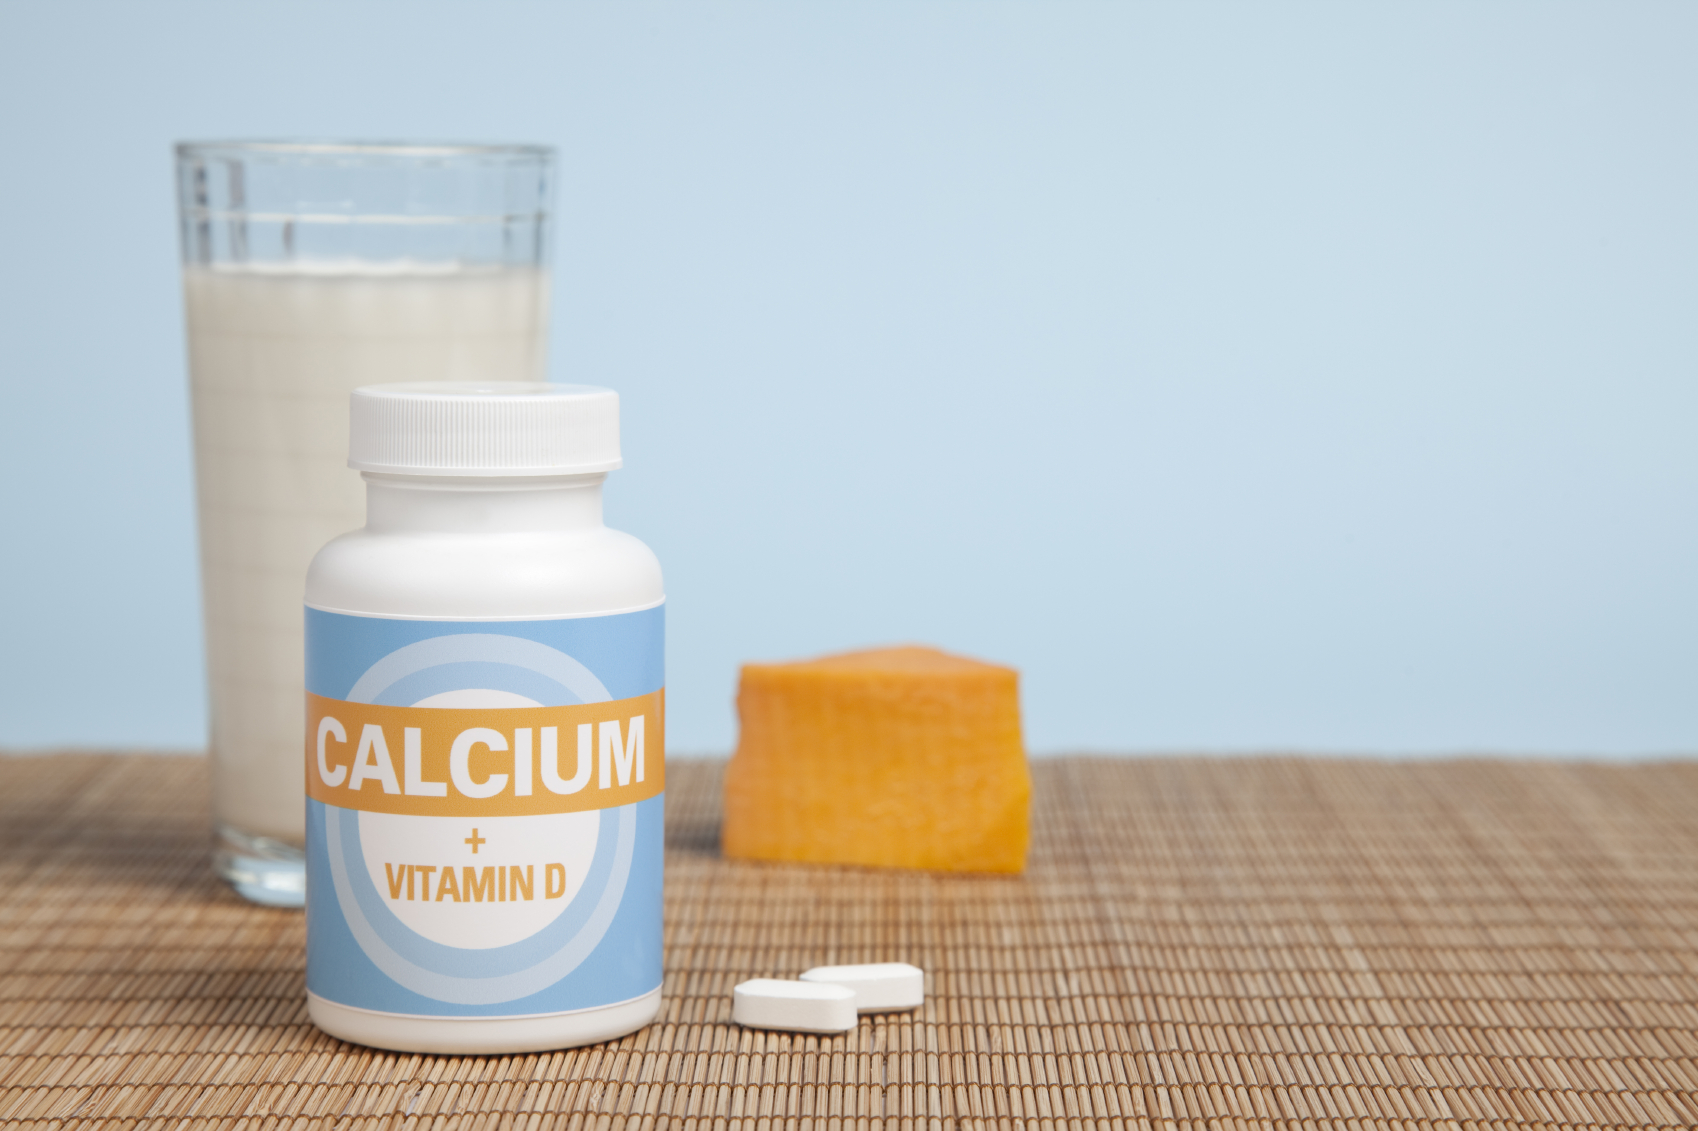 La vitamine D et le calcium forment un duo dynamique pour le maintien d’os forts